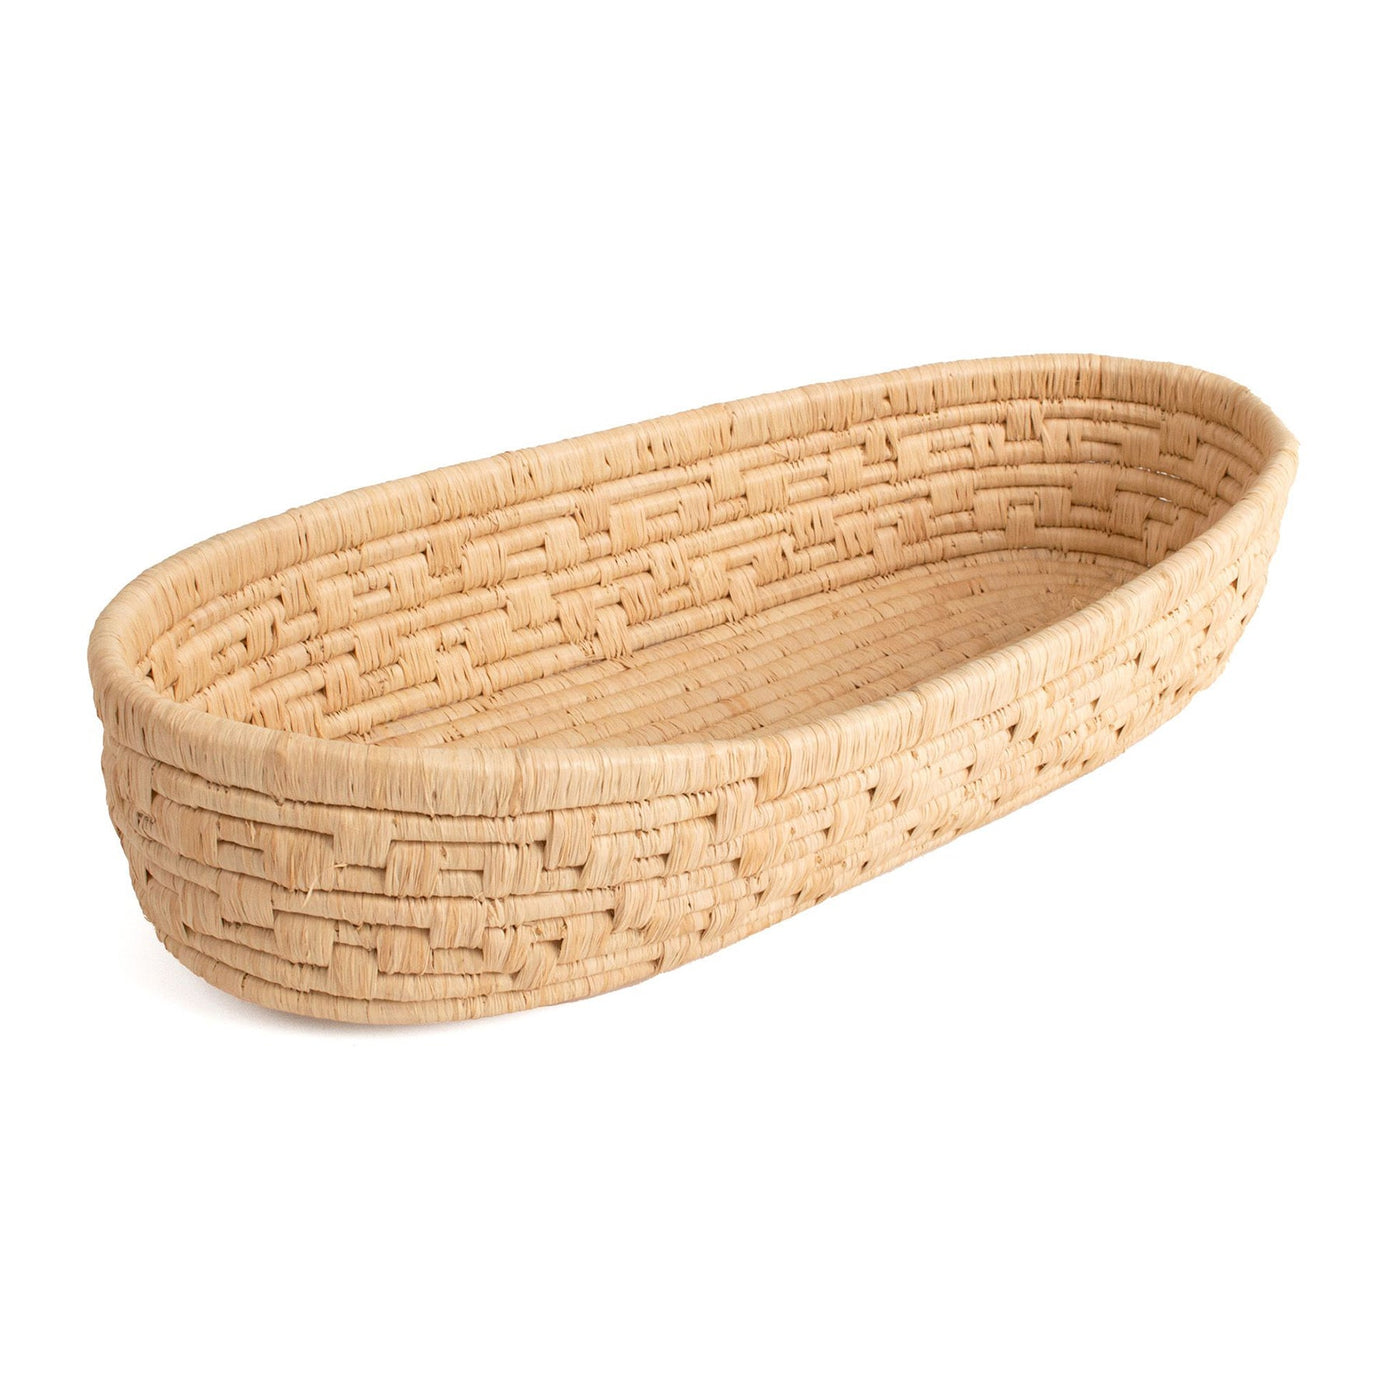 Stone Bread Basket - 18" Oval